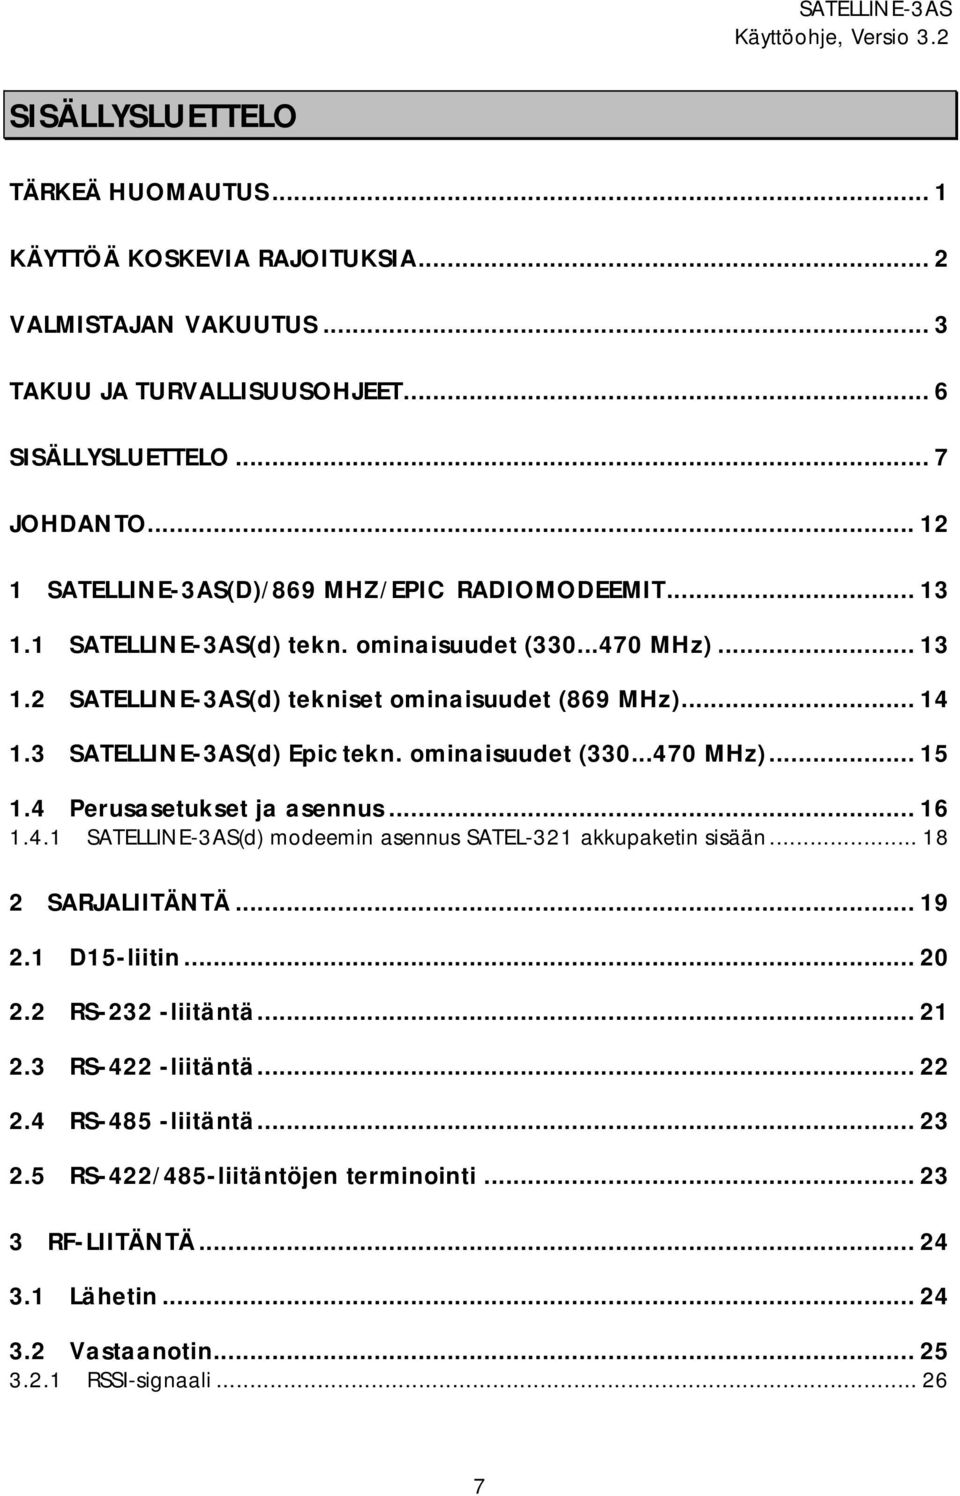 3 SATELLINE-3AS(d) Epic tekn. ominaisuudet (330...470 MHz)... 15 1.4 Perusasetukset ja asennus... 16 1.4.1 SATELLINE-3AS(d) modeemin asennus SATEL-321 akkupaketin sisään... 18 2 SARJALIITÄNTÄ.